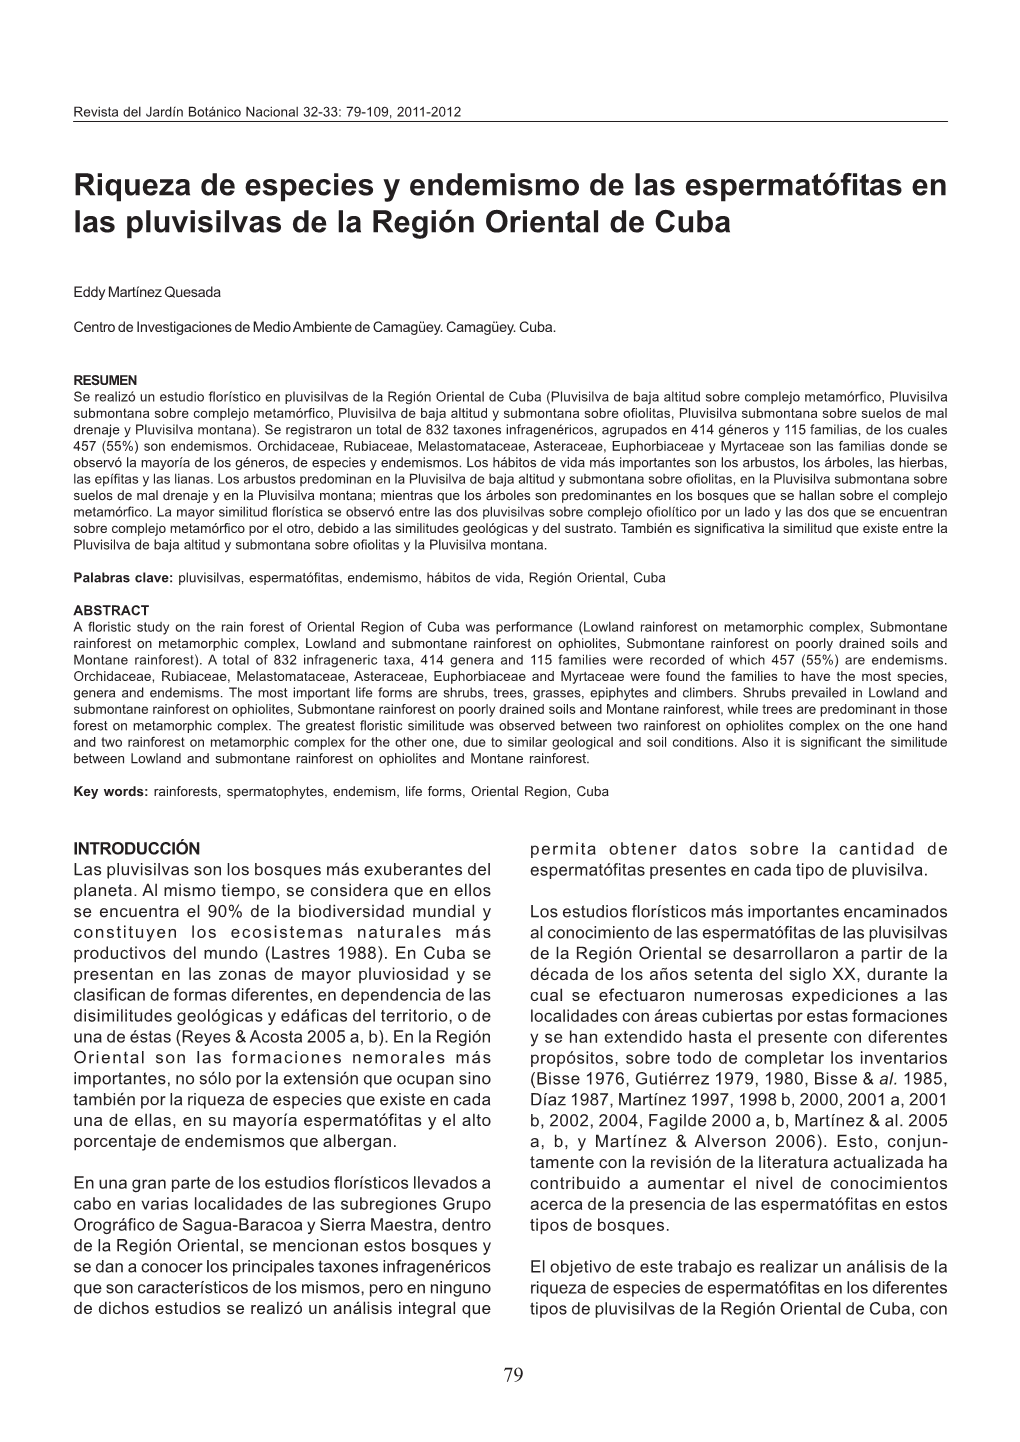 Riqueza De Especies Y Endemismo De Las Espermatófitas En Las Pluvisilvas De La Región Oriental De Cuba